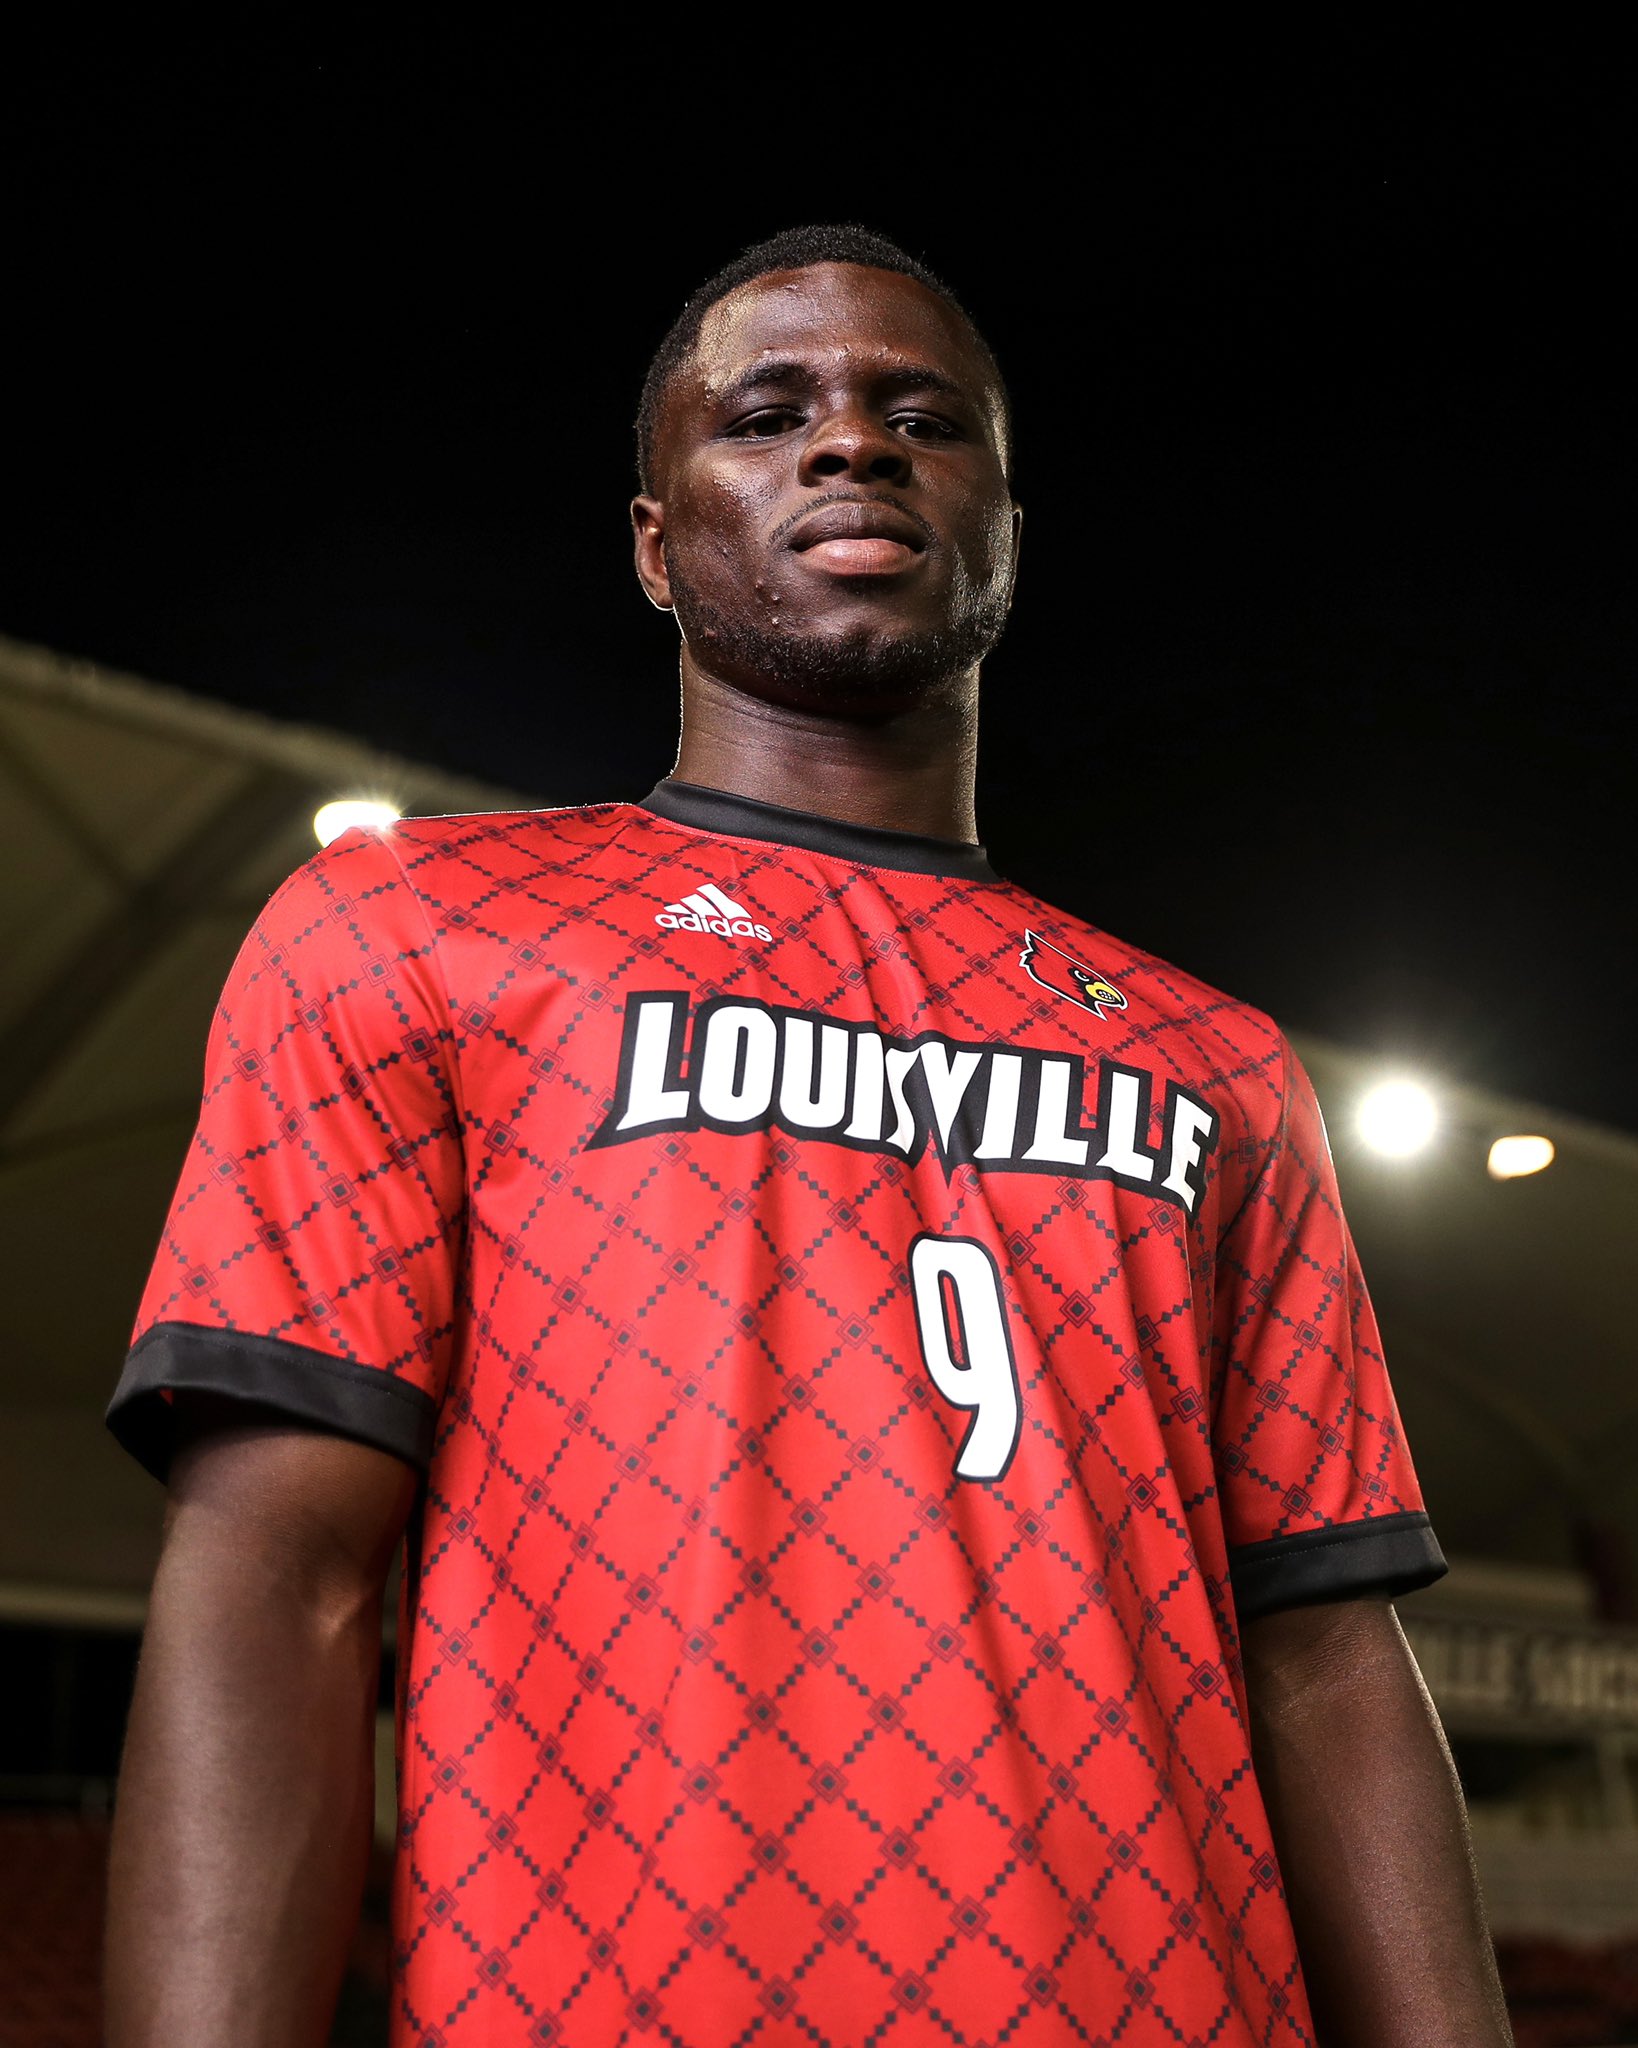 Louisville Men's Soccer on X: 🔥 𝗡𝗘𝗪 𝗞𝗜𝗧 𝗔𝗟𝗘𝗥𝗧